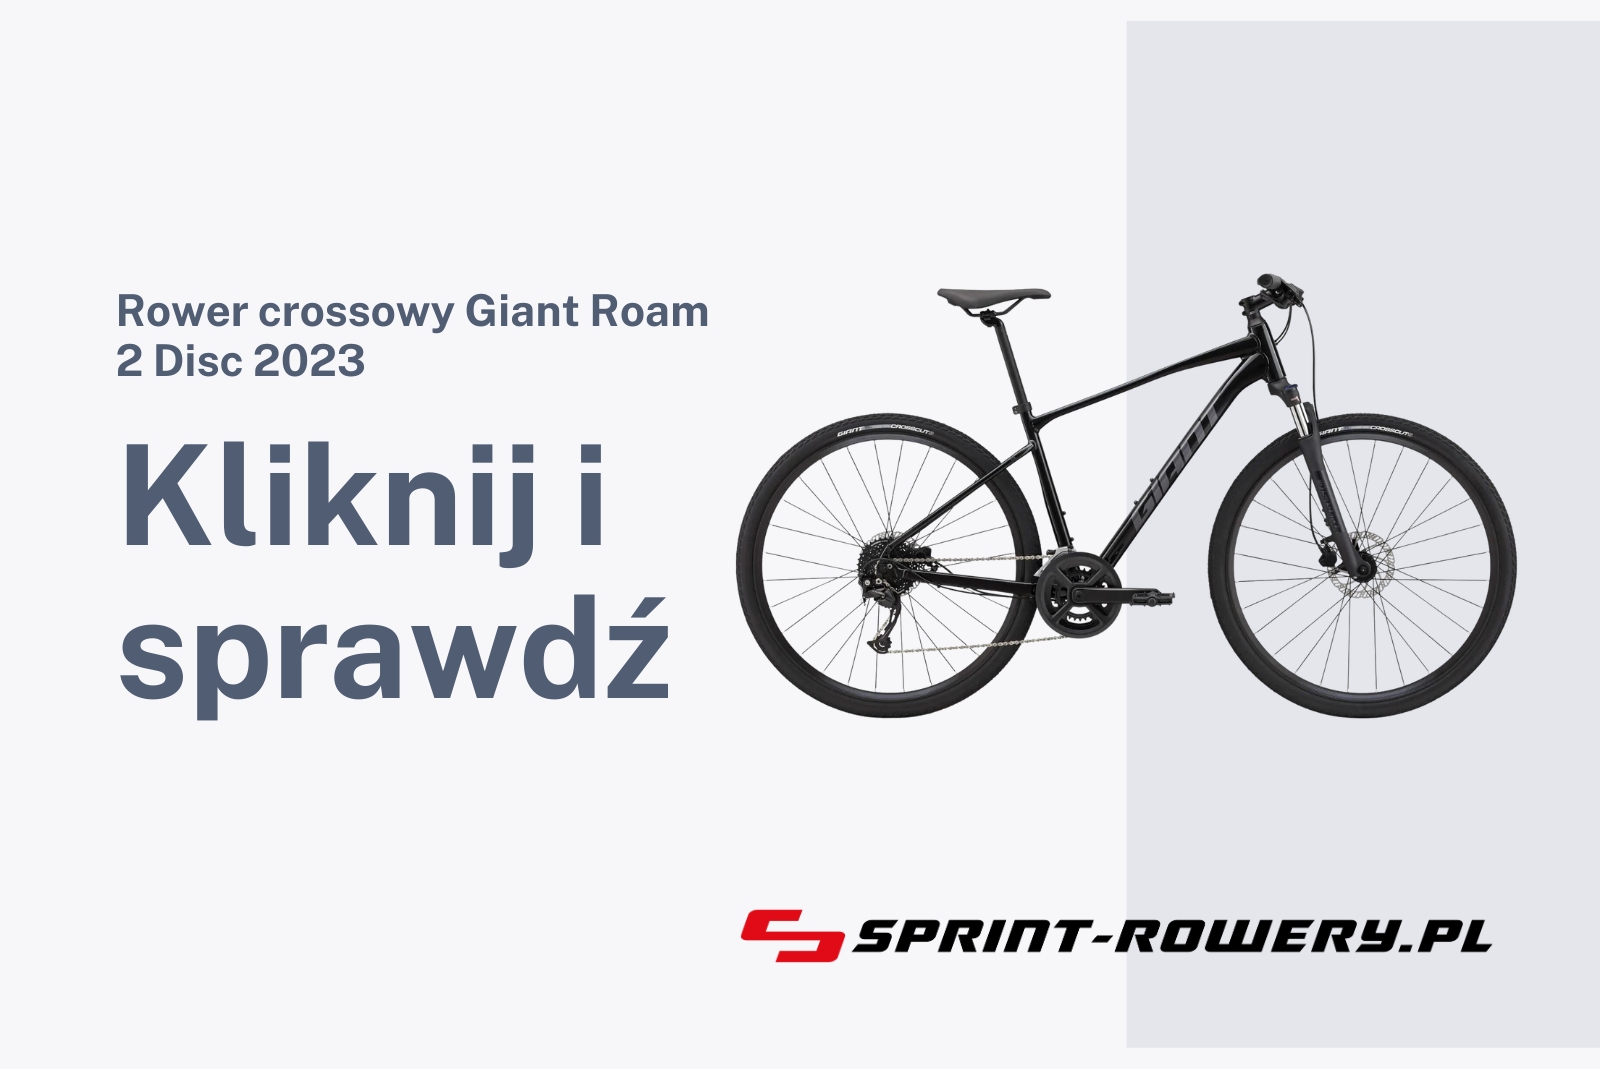 Rower crossowy Giant Roam 2 Disc 2023